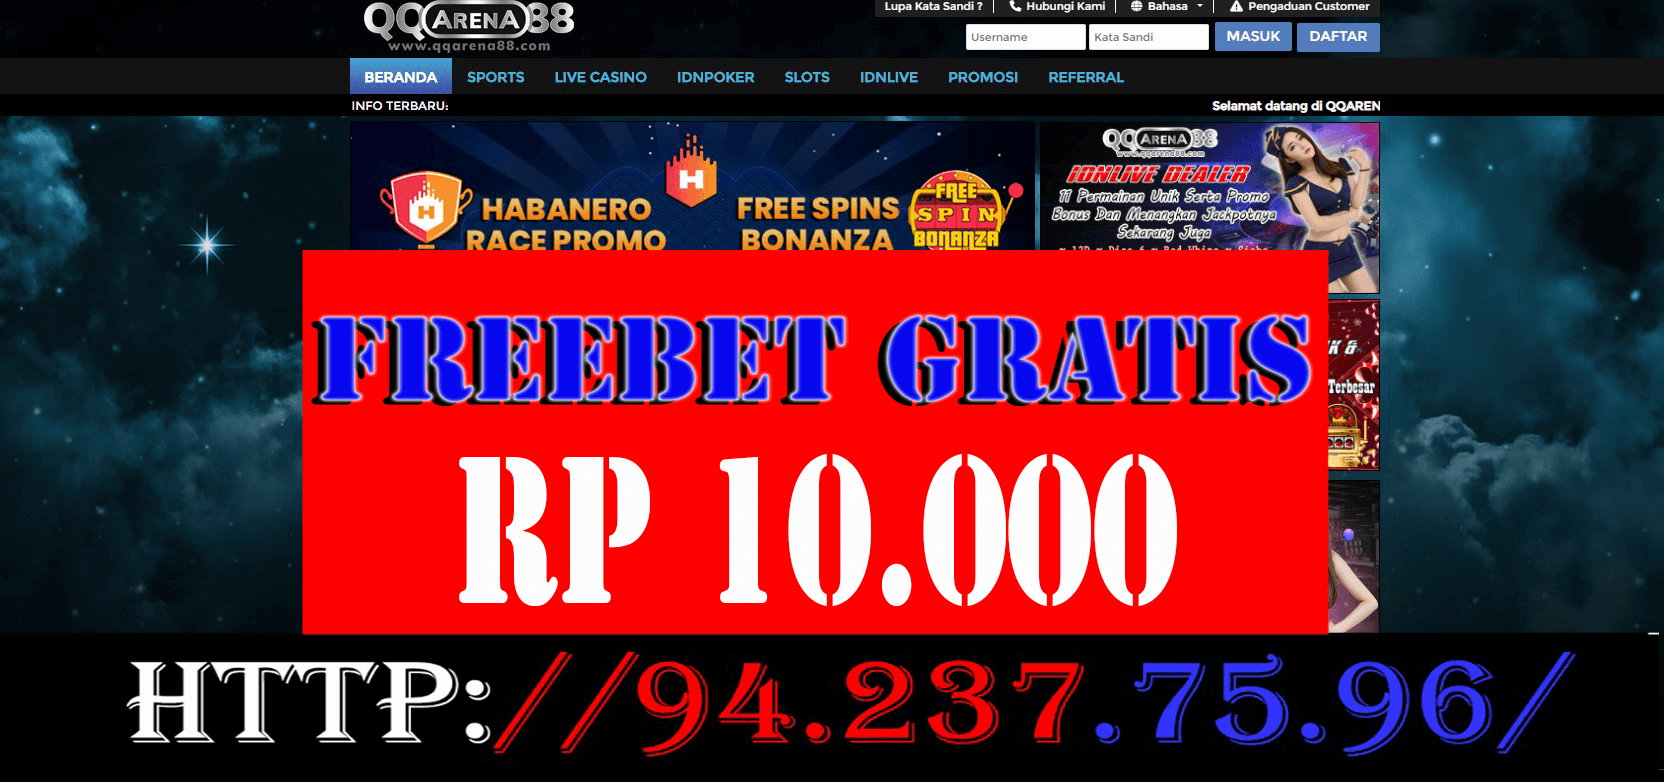 Freebet Gratis QQarena88 Rp 10.000 Tanpa deposit